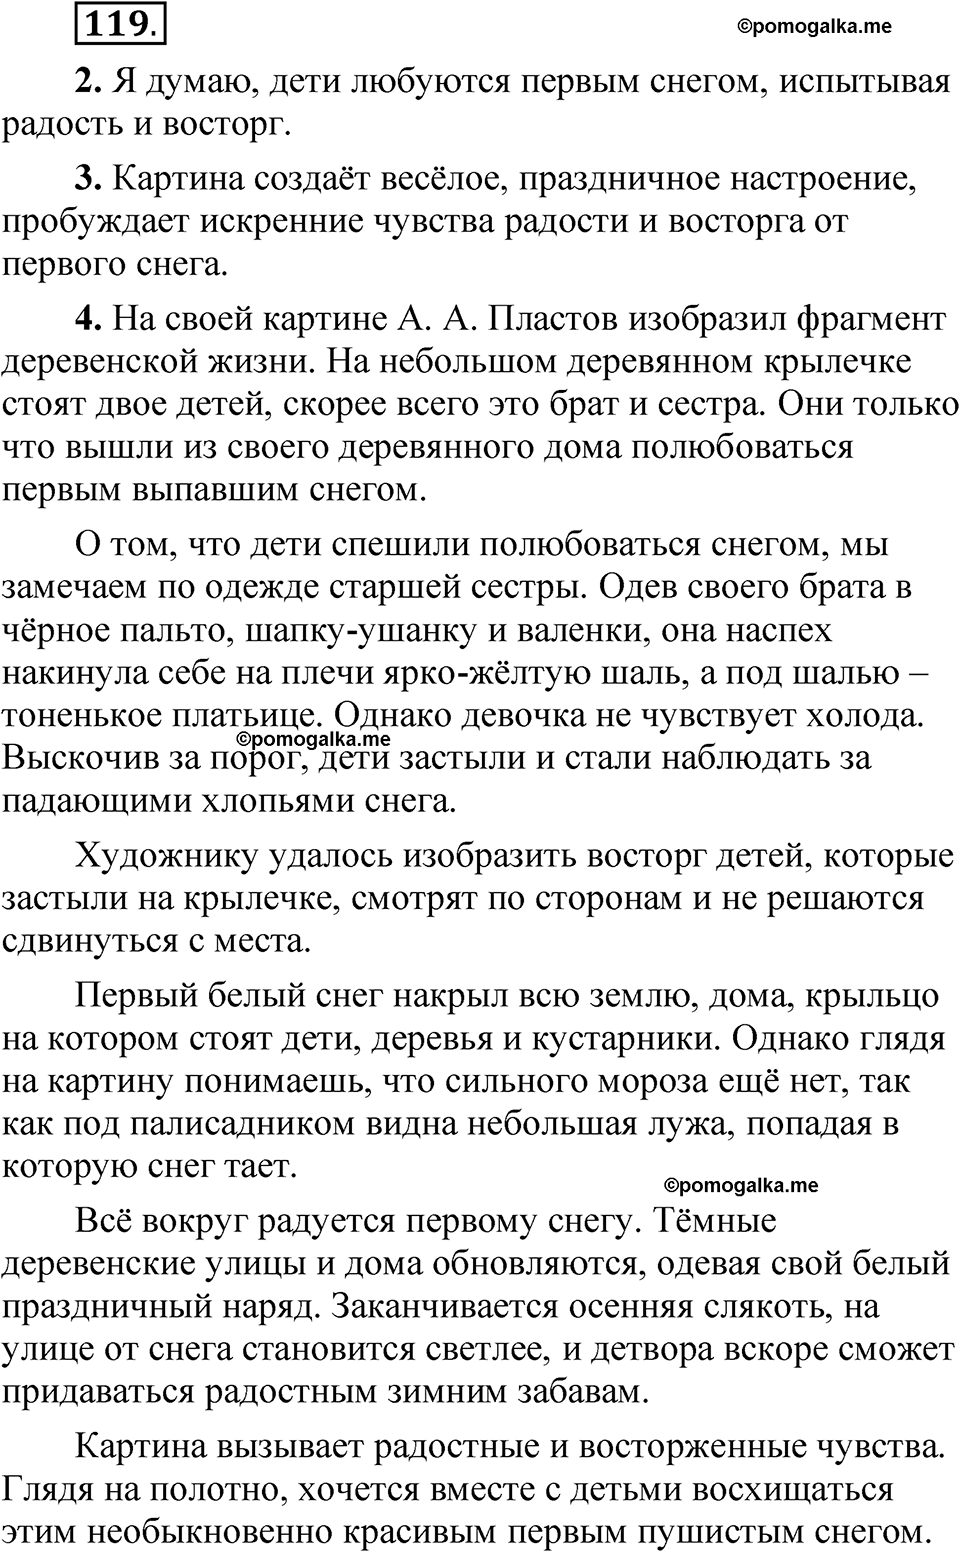 страница 80 упражнение 119 русский язык 5 класс Быстрова, Кибирева 2 часть 2021 год